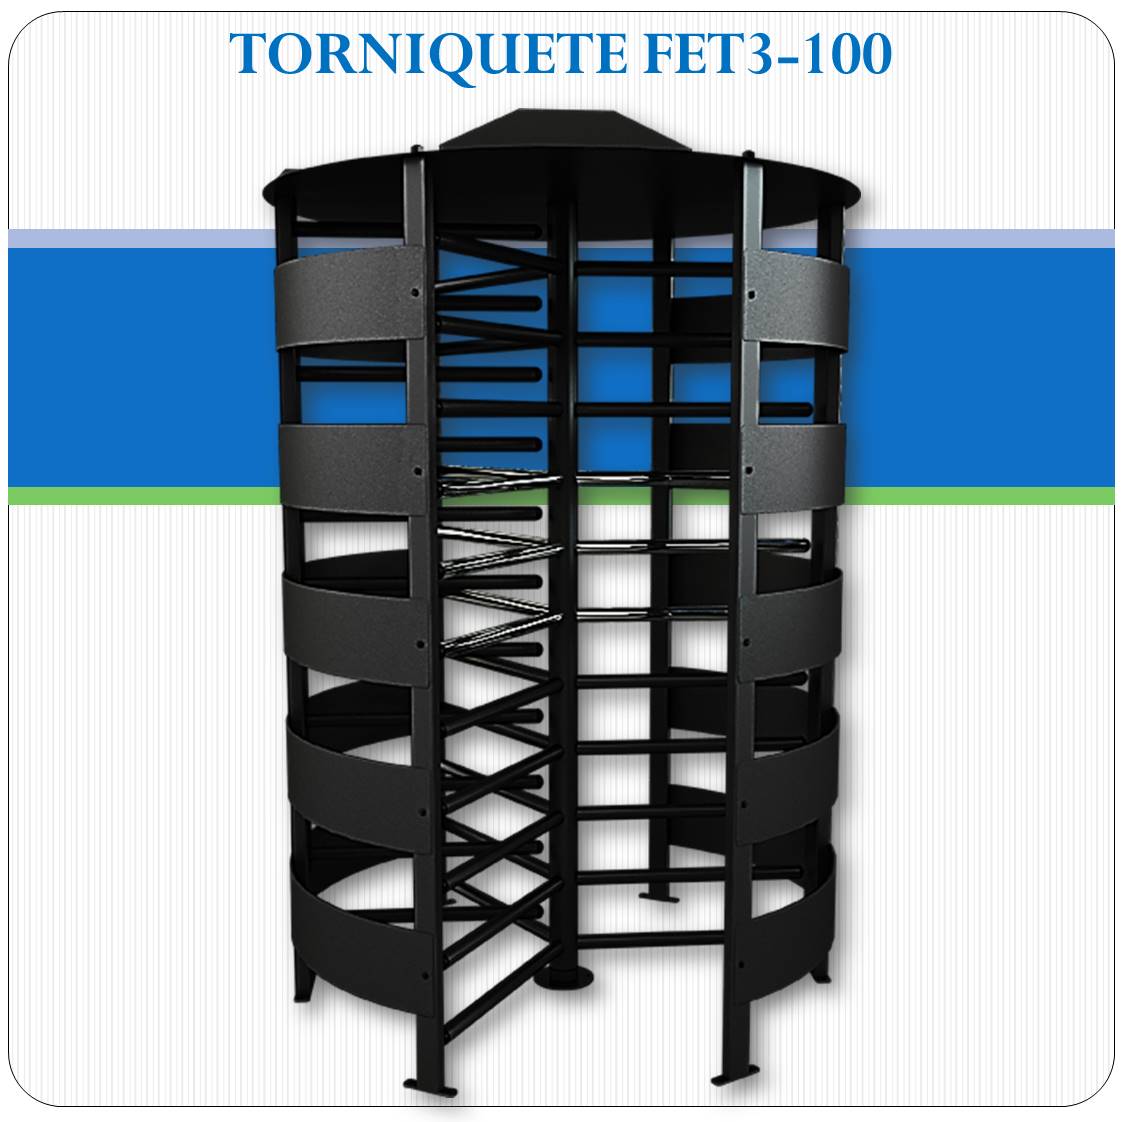 Torniquete FET3-100 